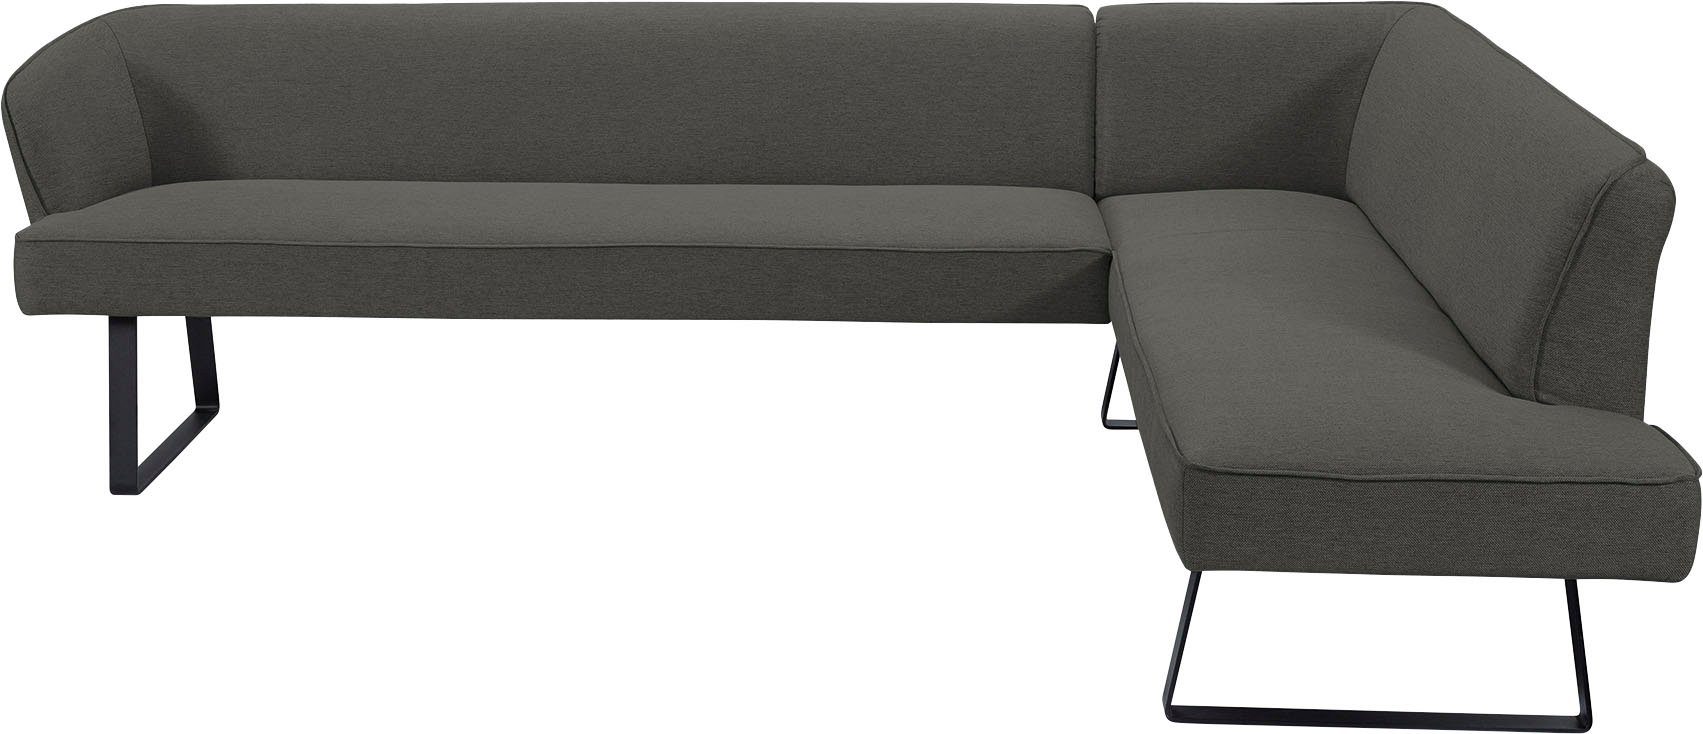 exxpo - sofa fashion Eckbank in mit Bezug und Metallfüßen, Qualitäten Americano, Keder verschiedenen